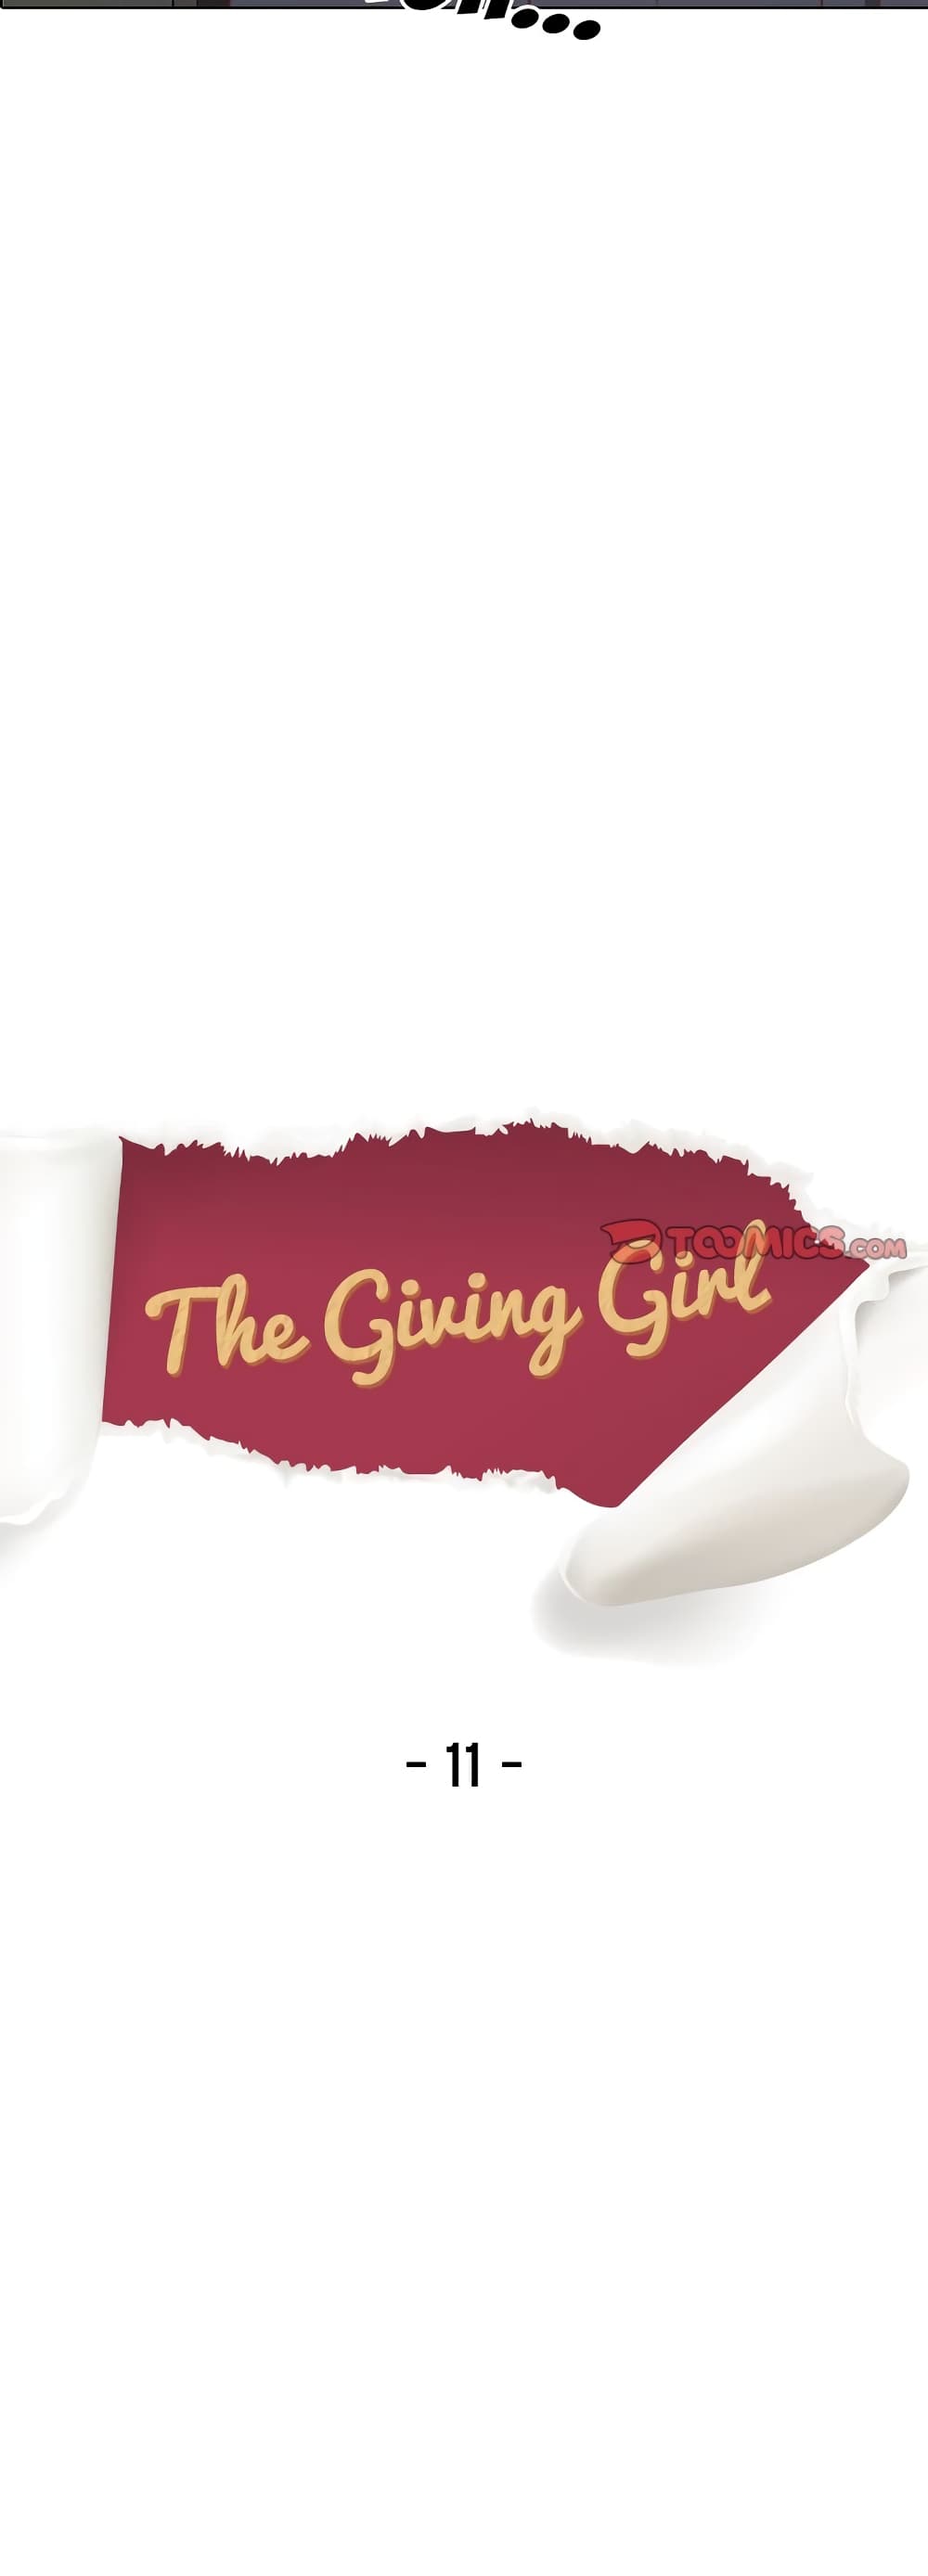 Giving Girl 11-11